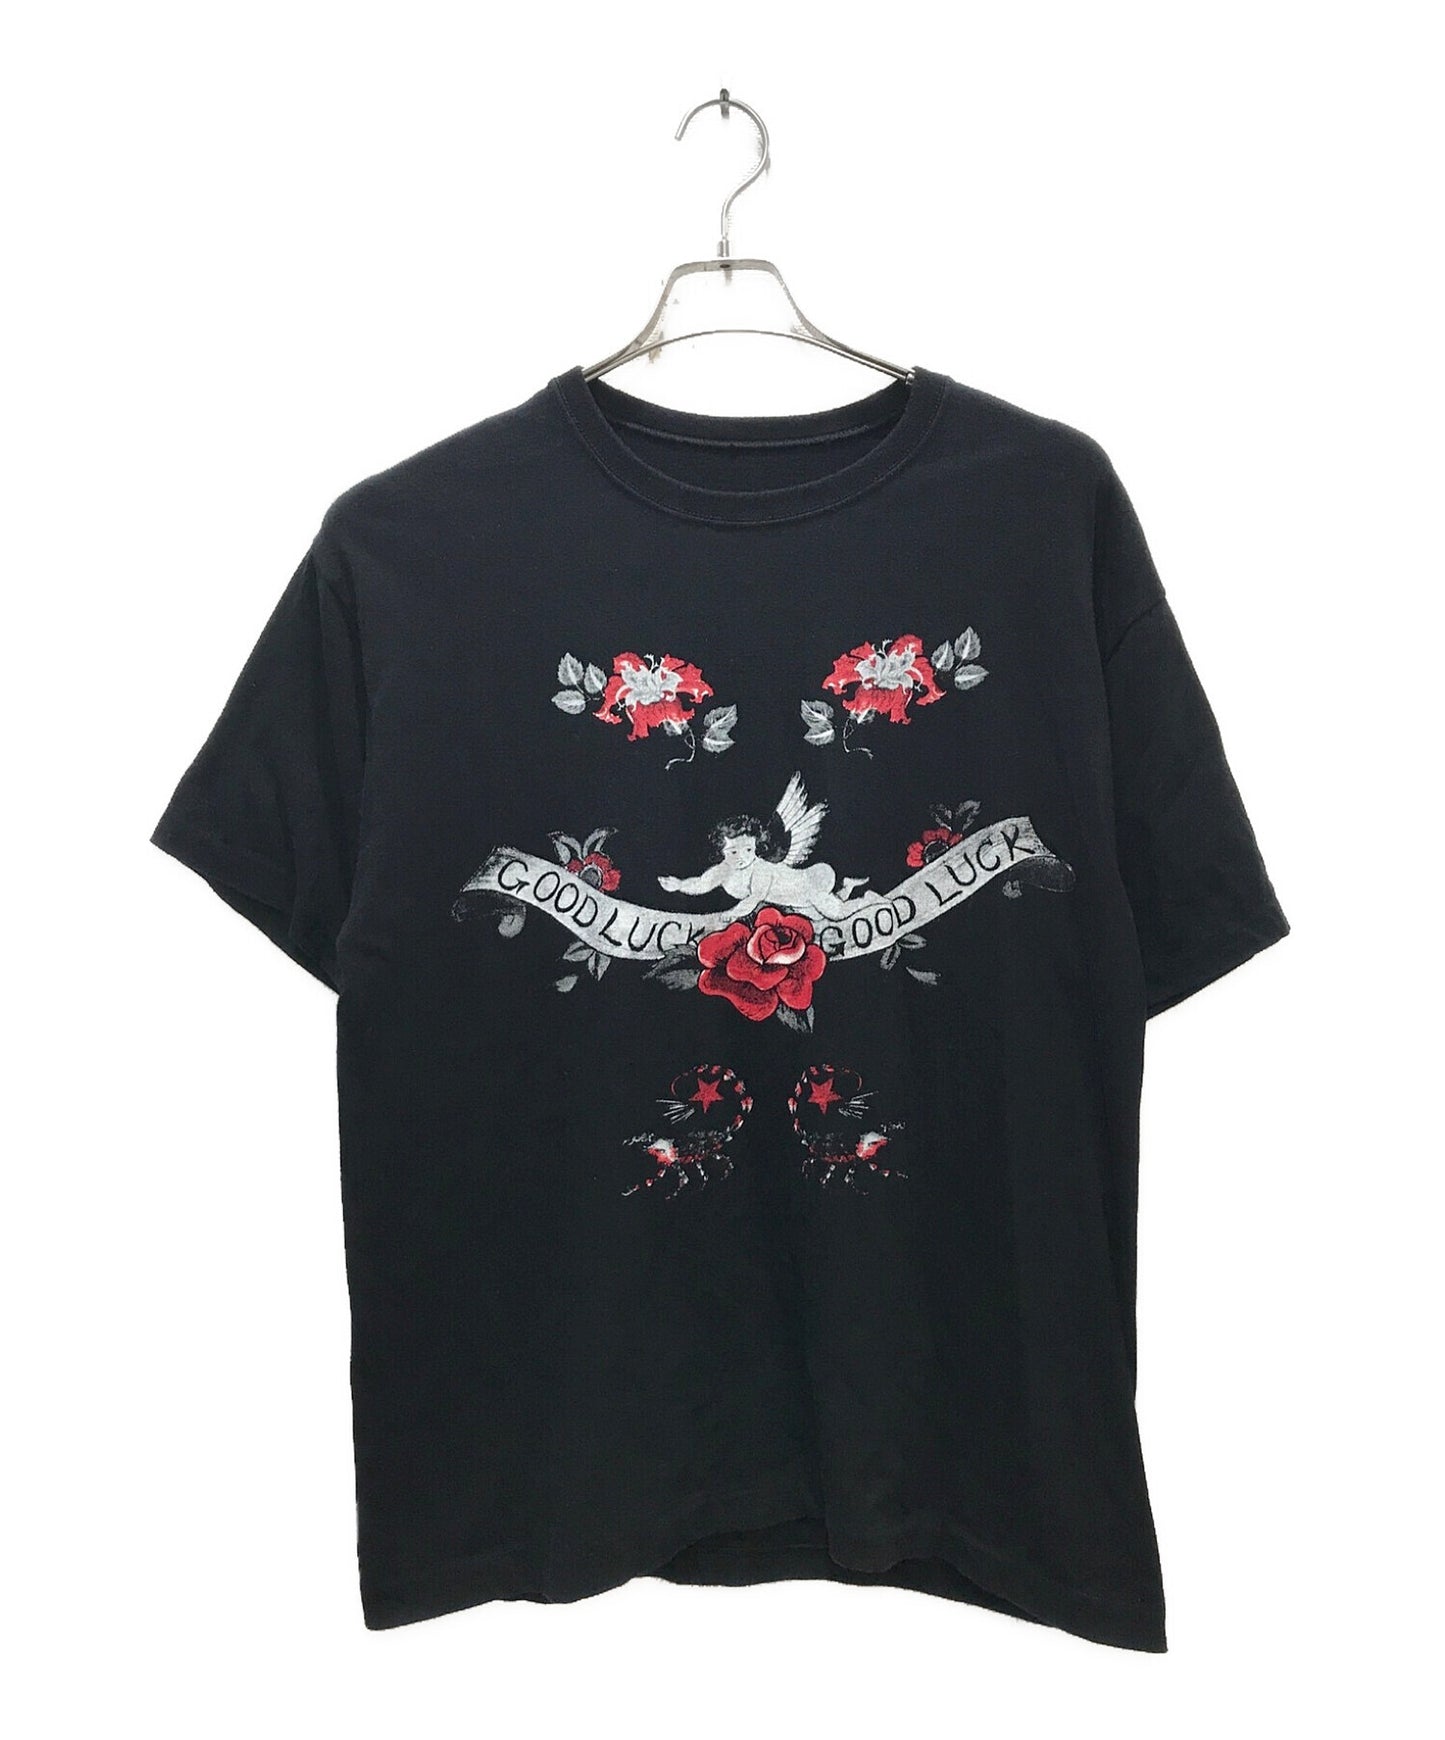 S'yte by Yohji Yamamoto 20/Cottonjersey 해적 문신 티셔츠 UH-T91-006